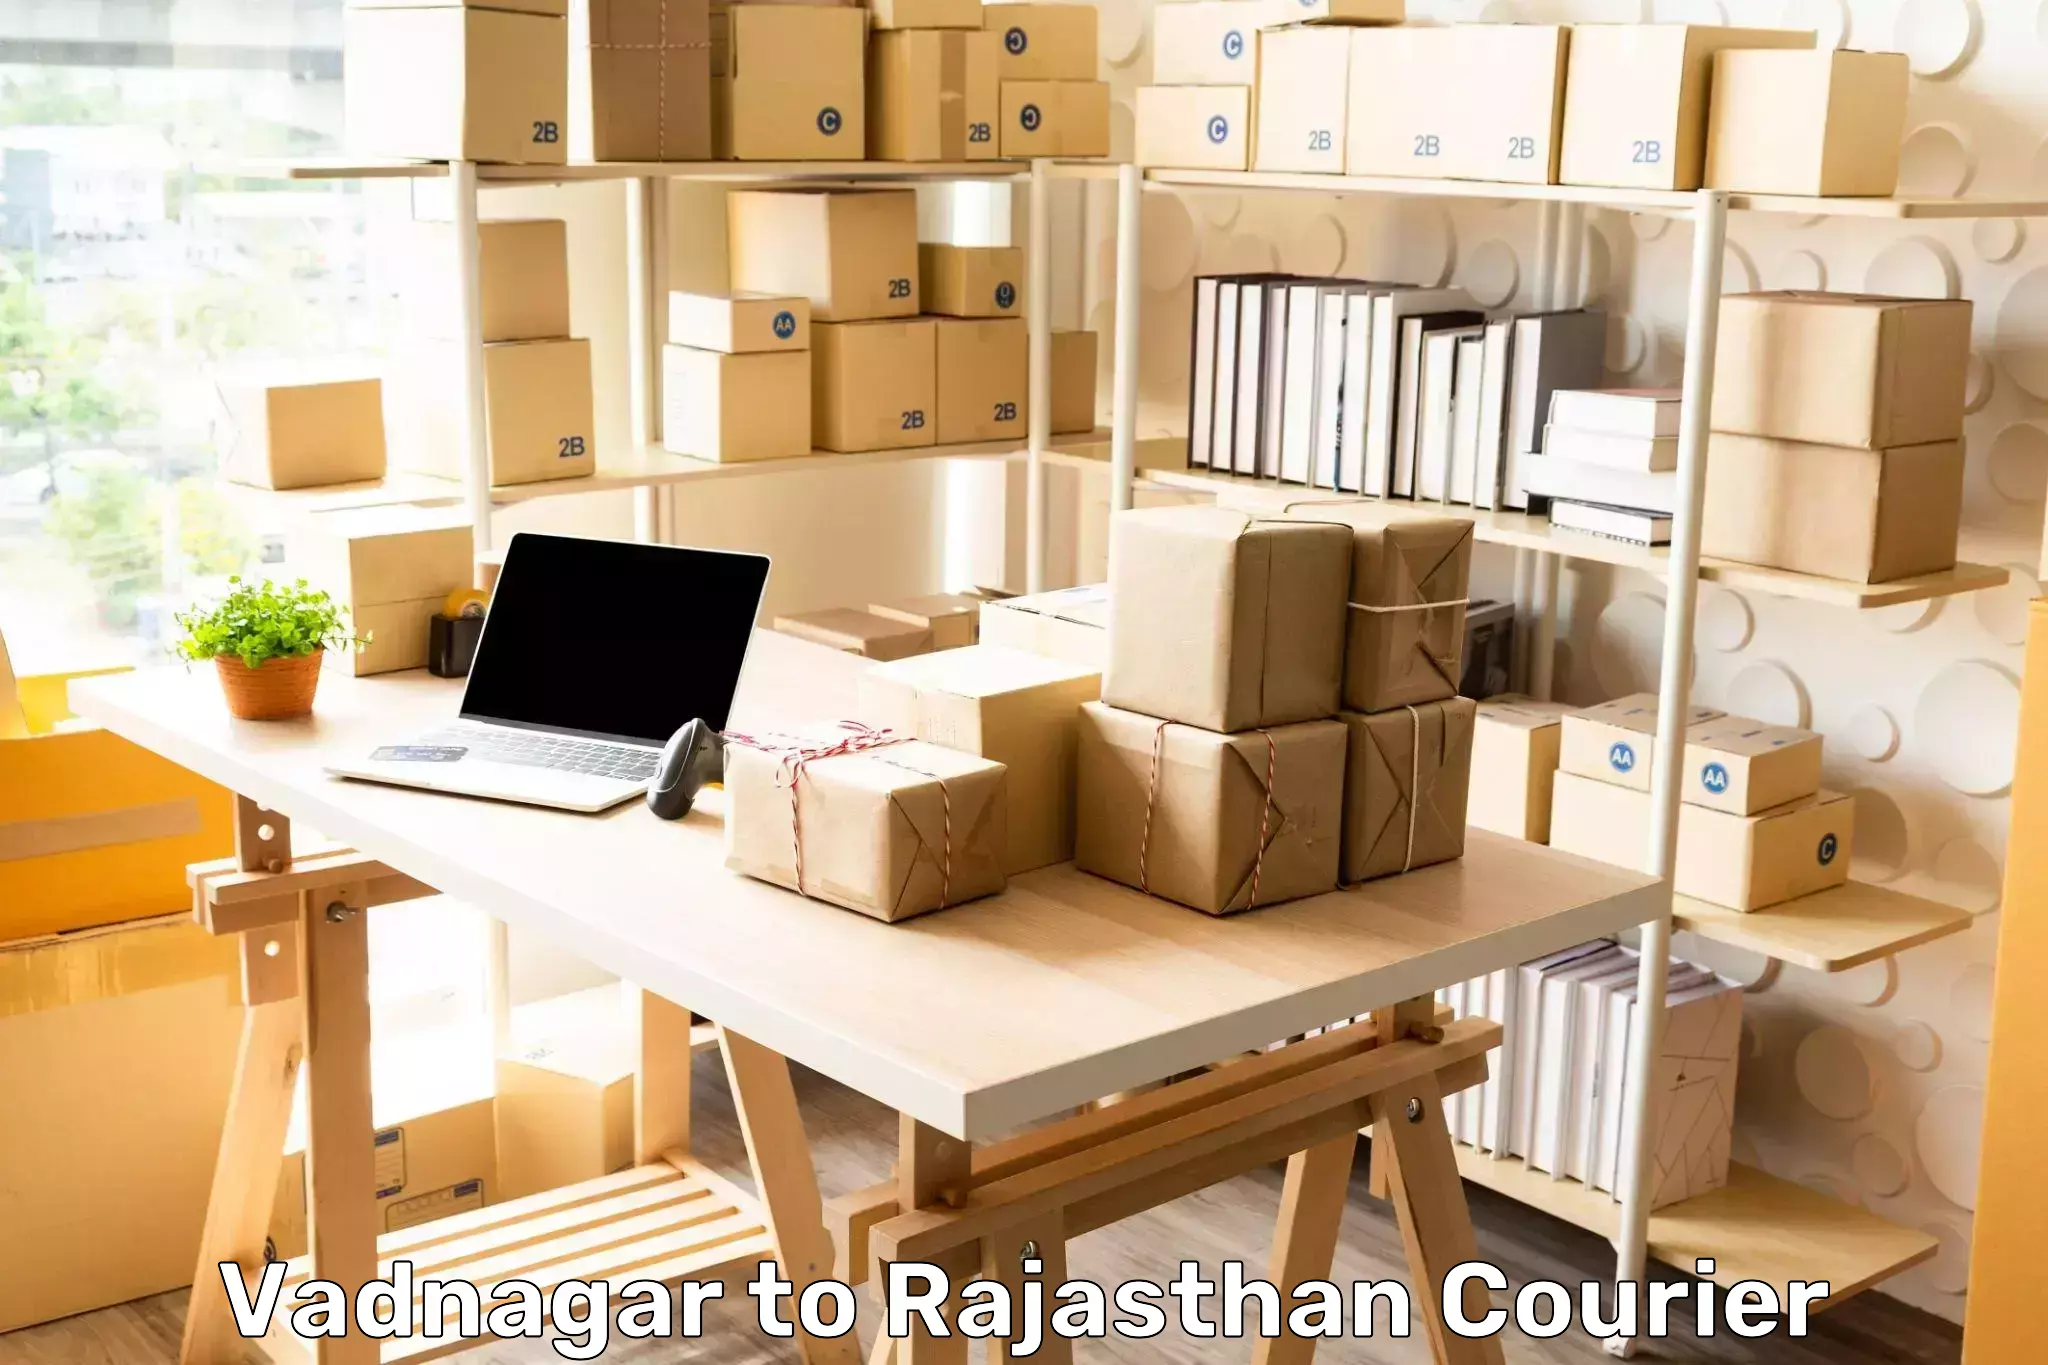 Cargo courier service Vadnagar to Bhilwara